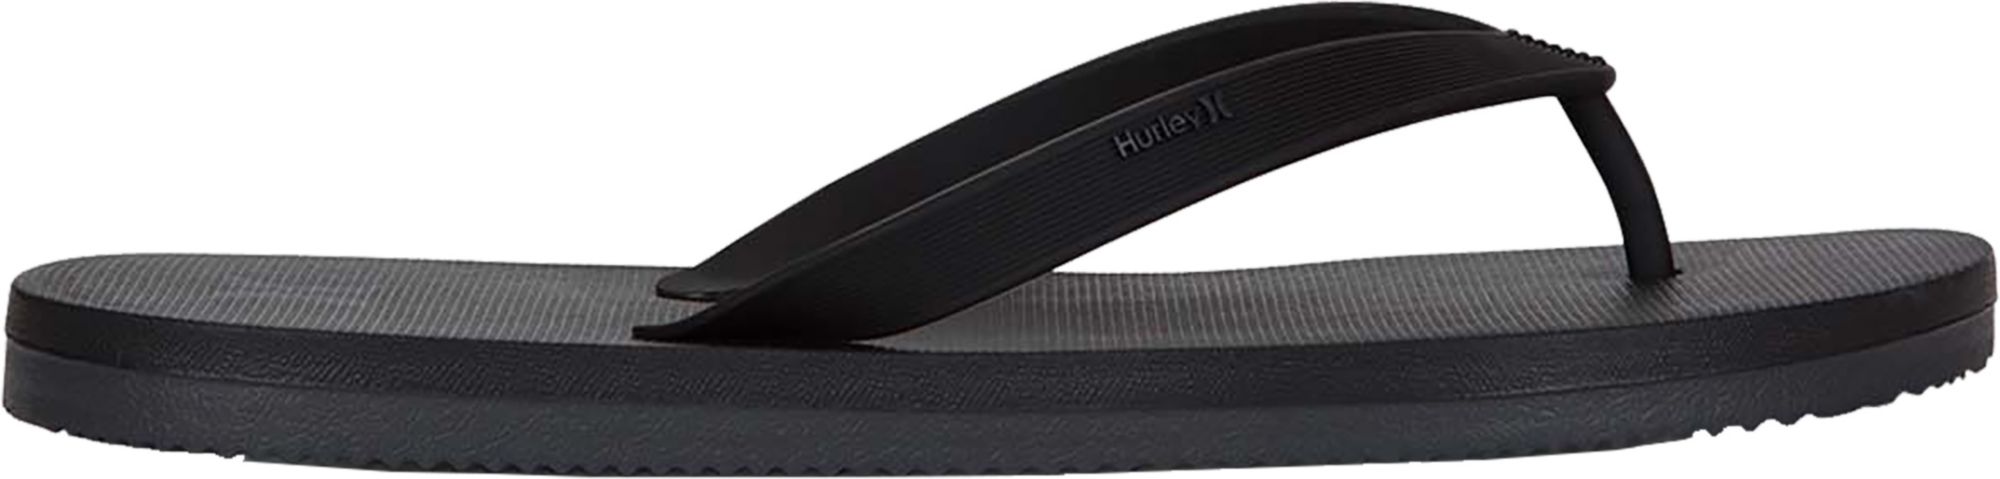 hurley flip flops